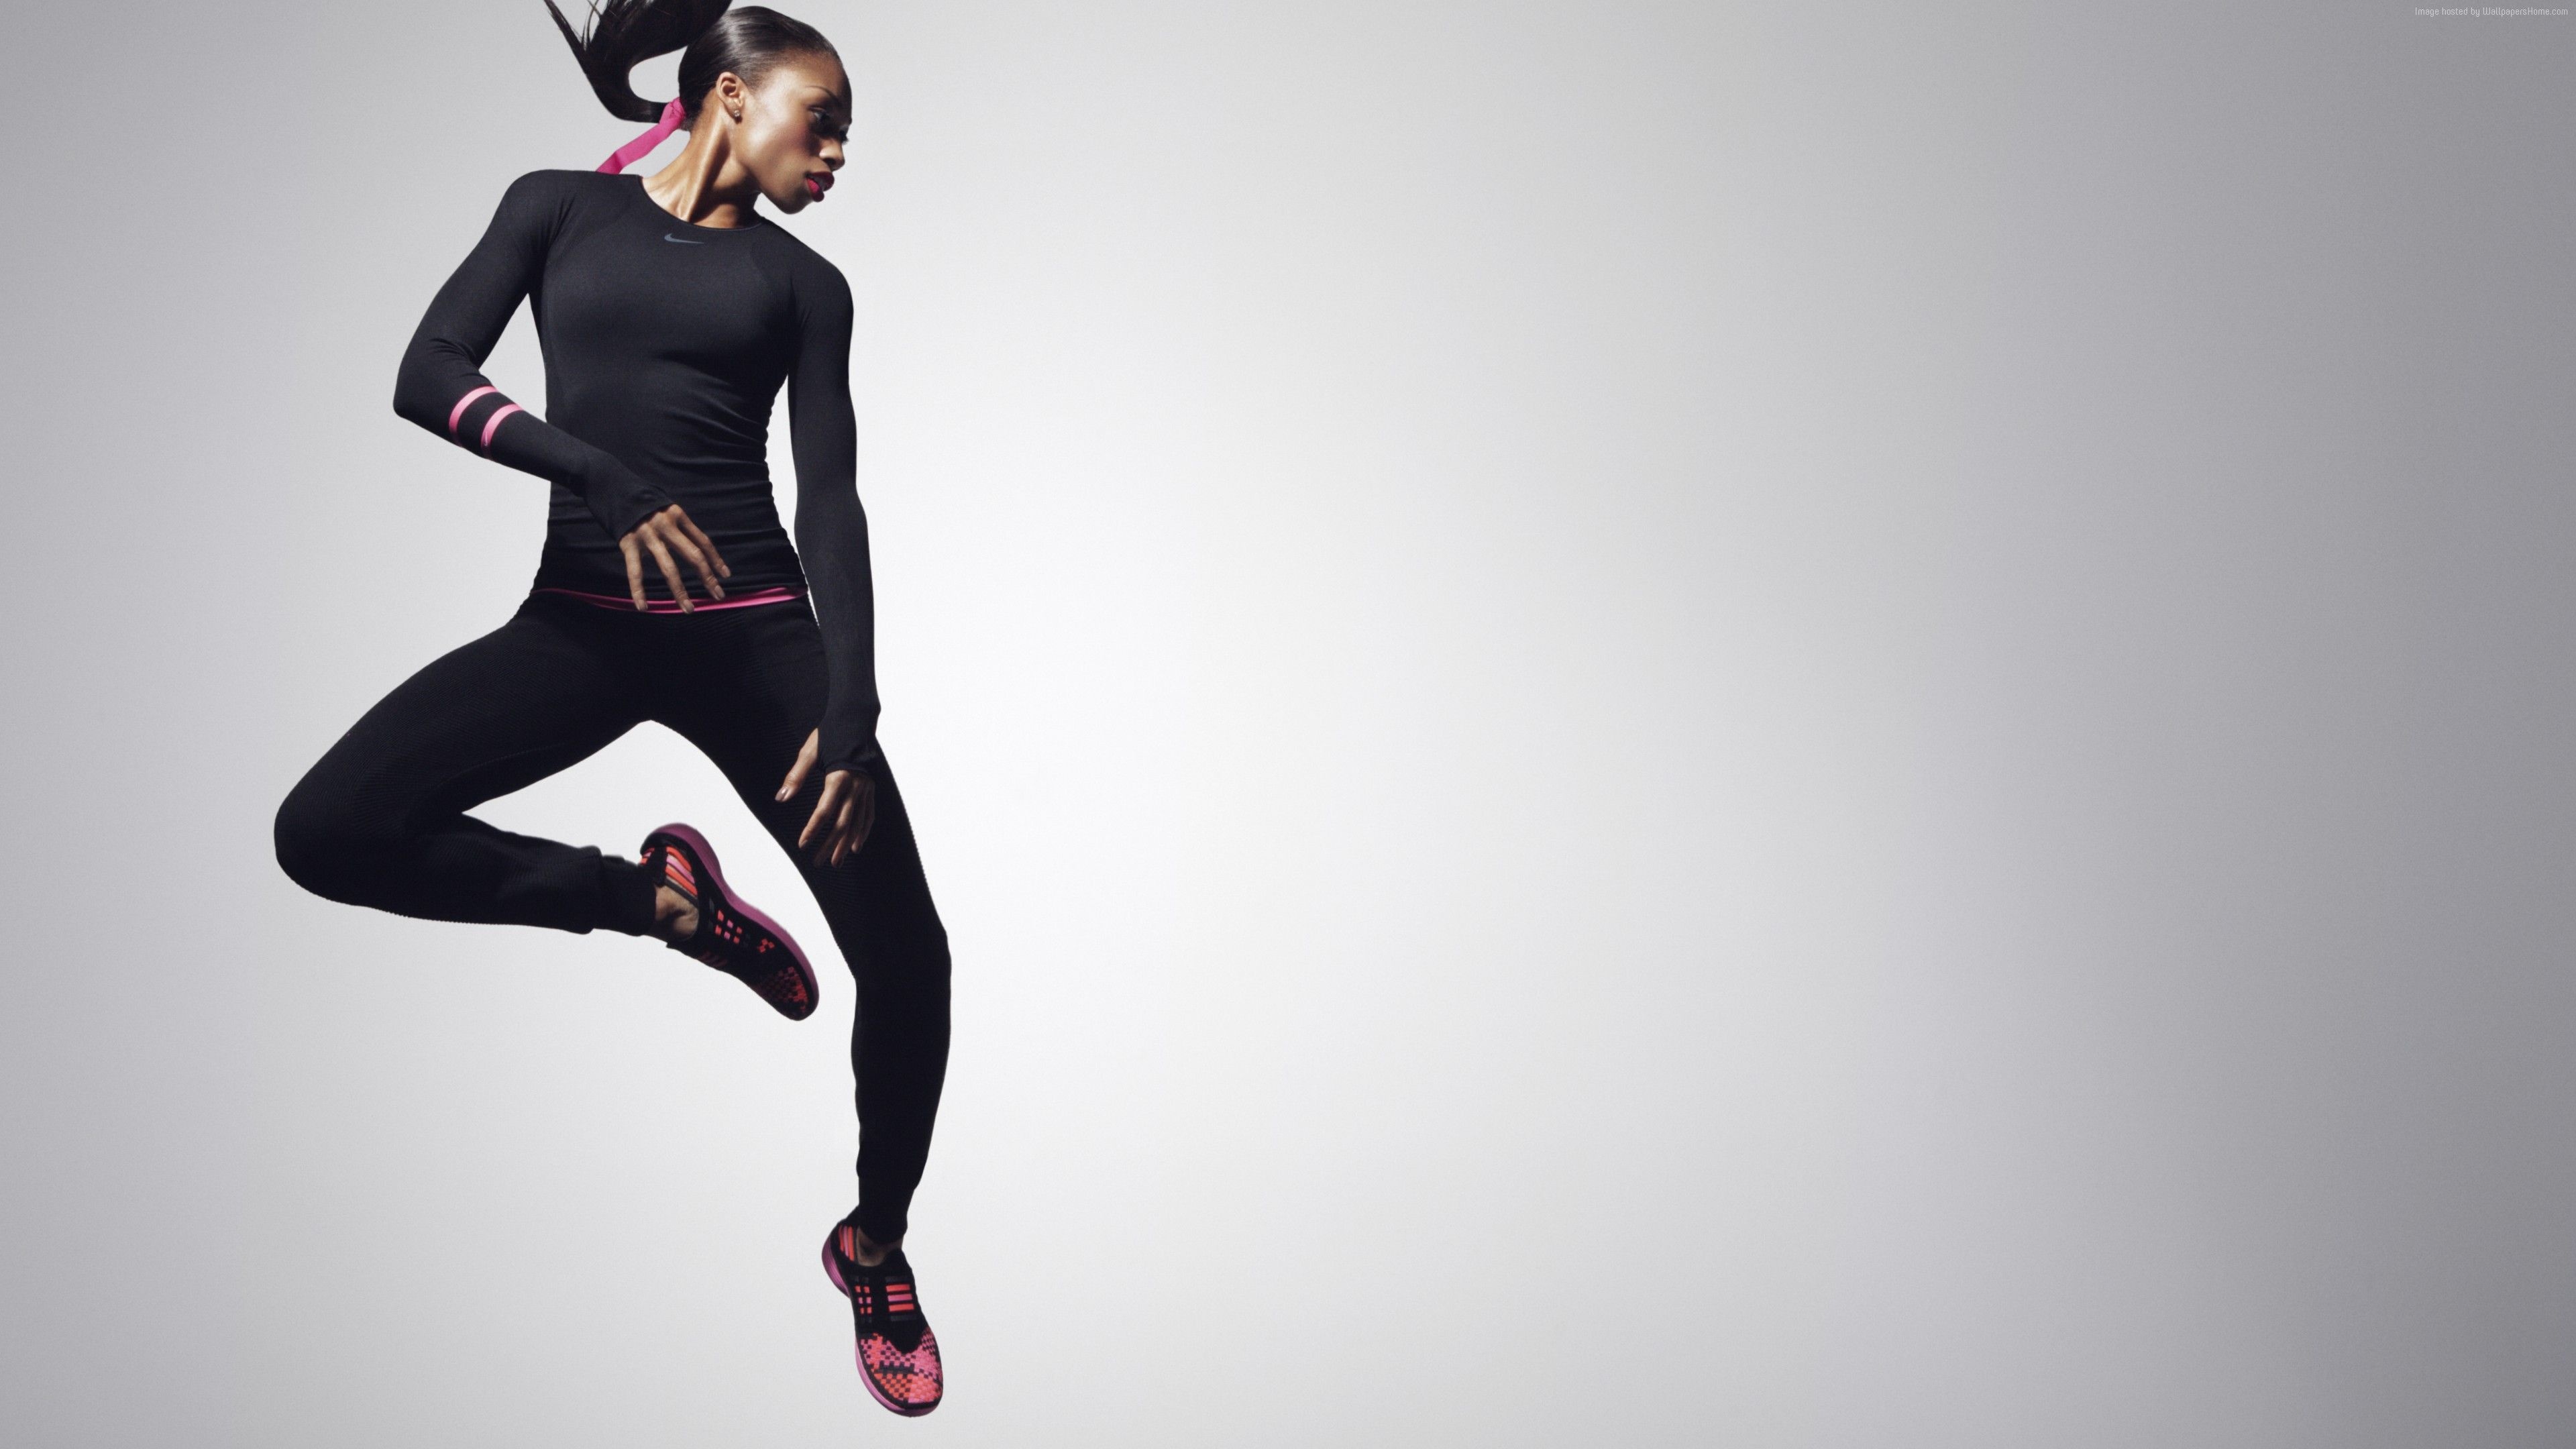 Jumping: Athlete, Allyson Felix, Sportswear, Track and field, Sports. 3840x2160 4K Wallpaper.